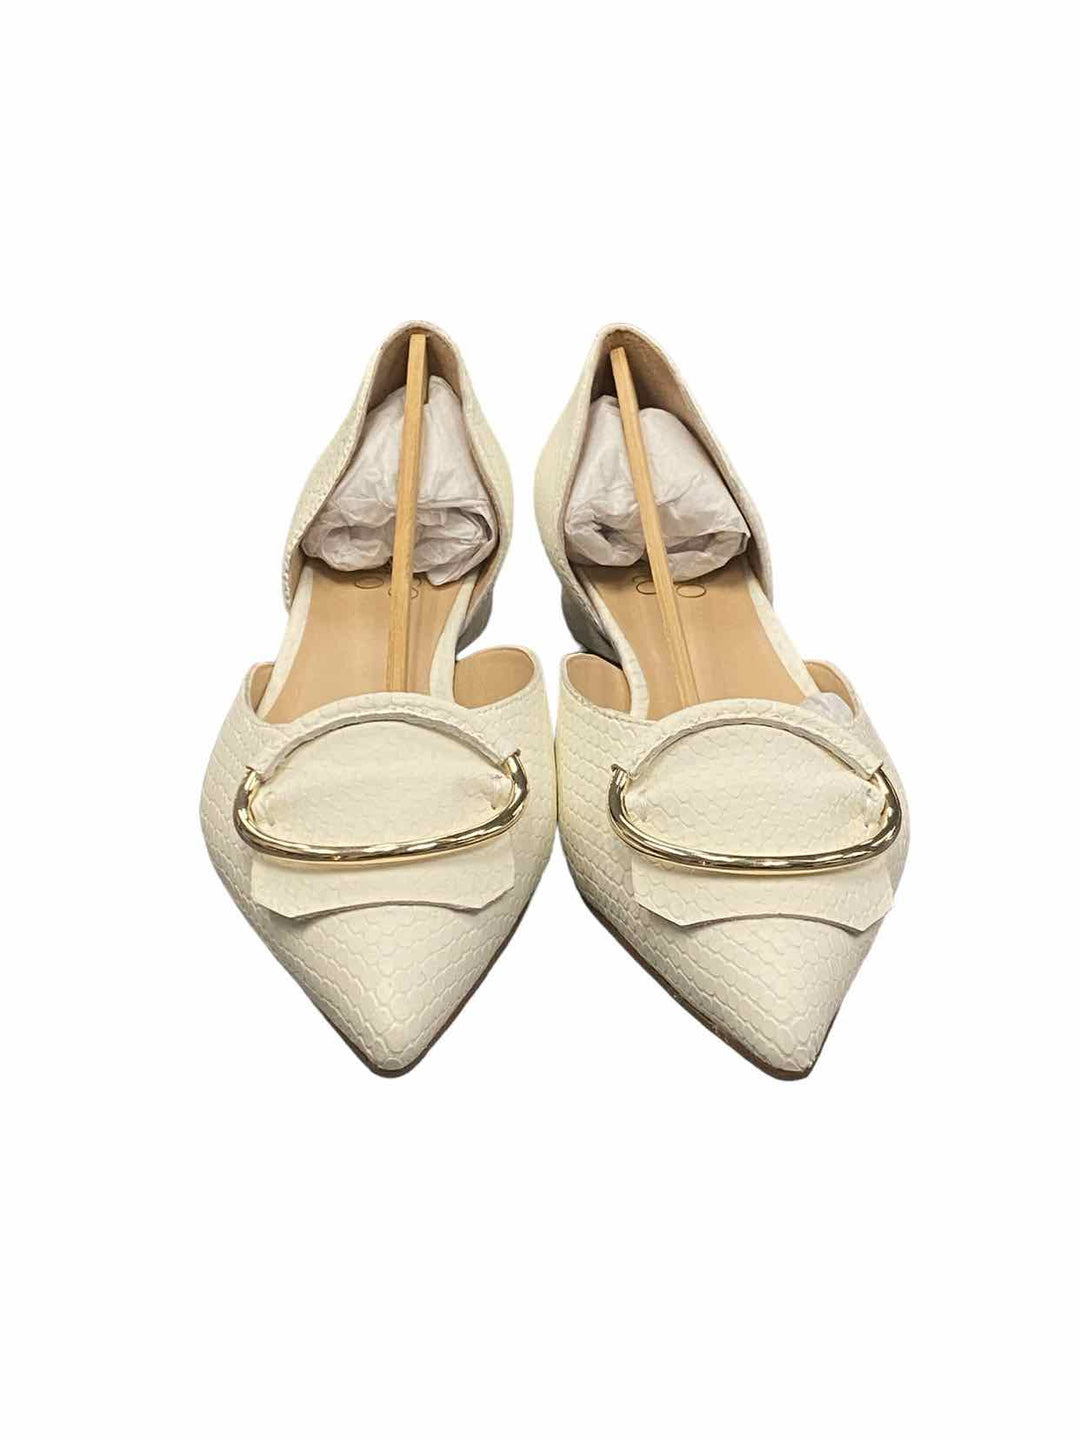 Franco Sarto Shoe Size 6.5 White Leather NWOT Flats